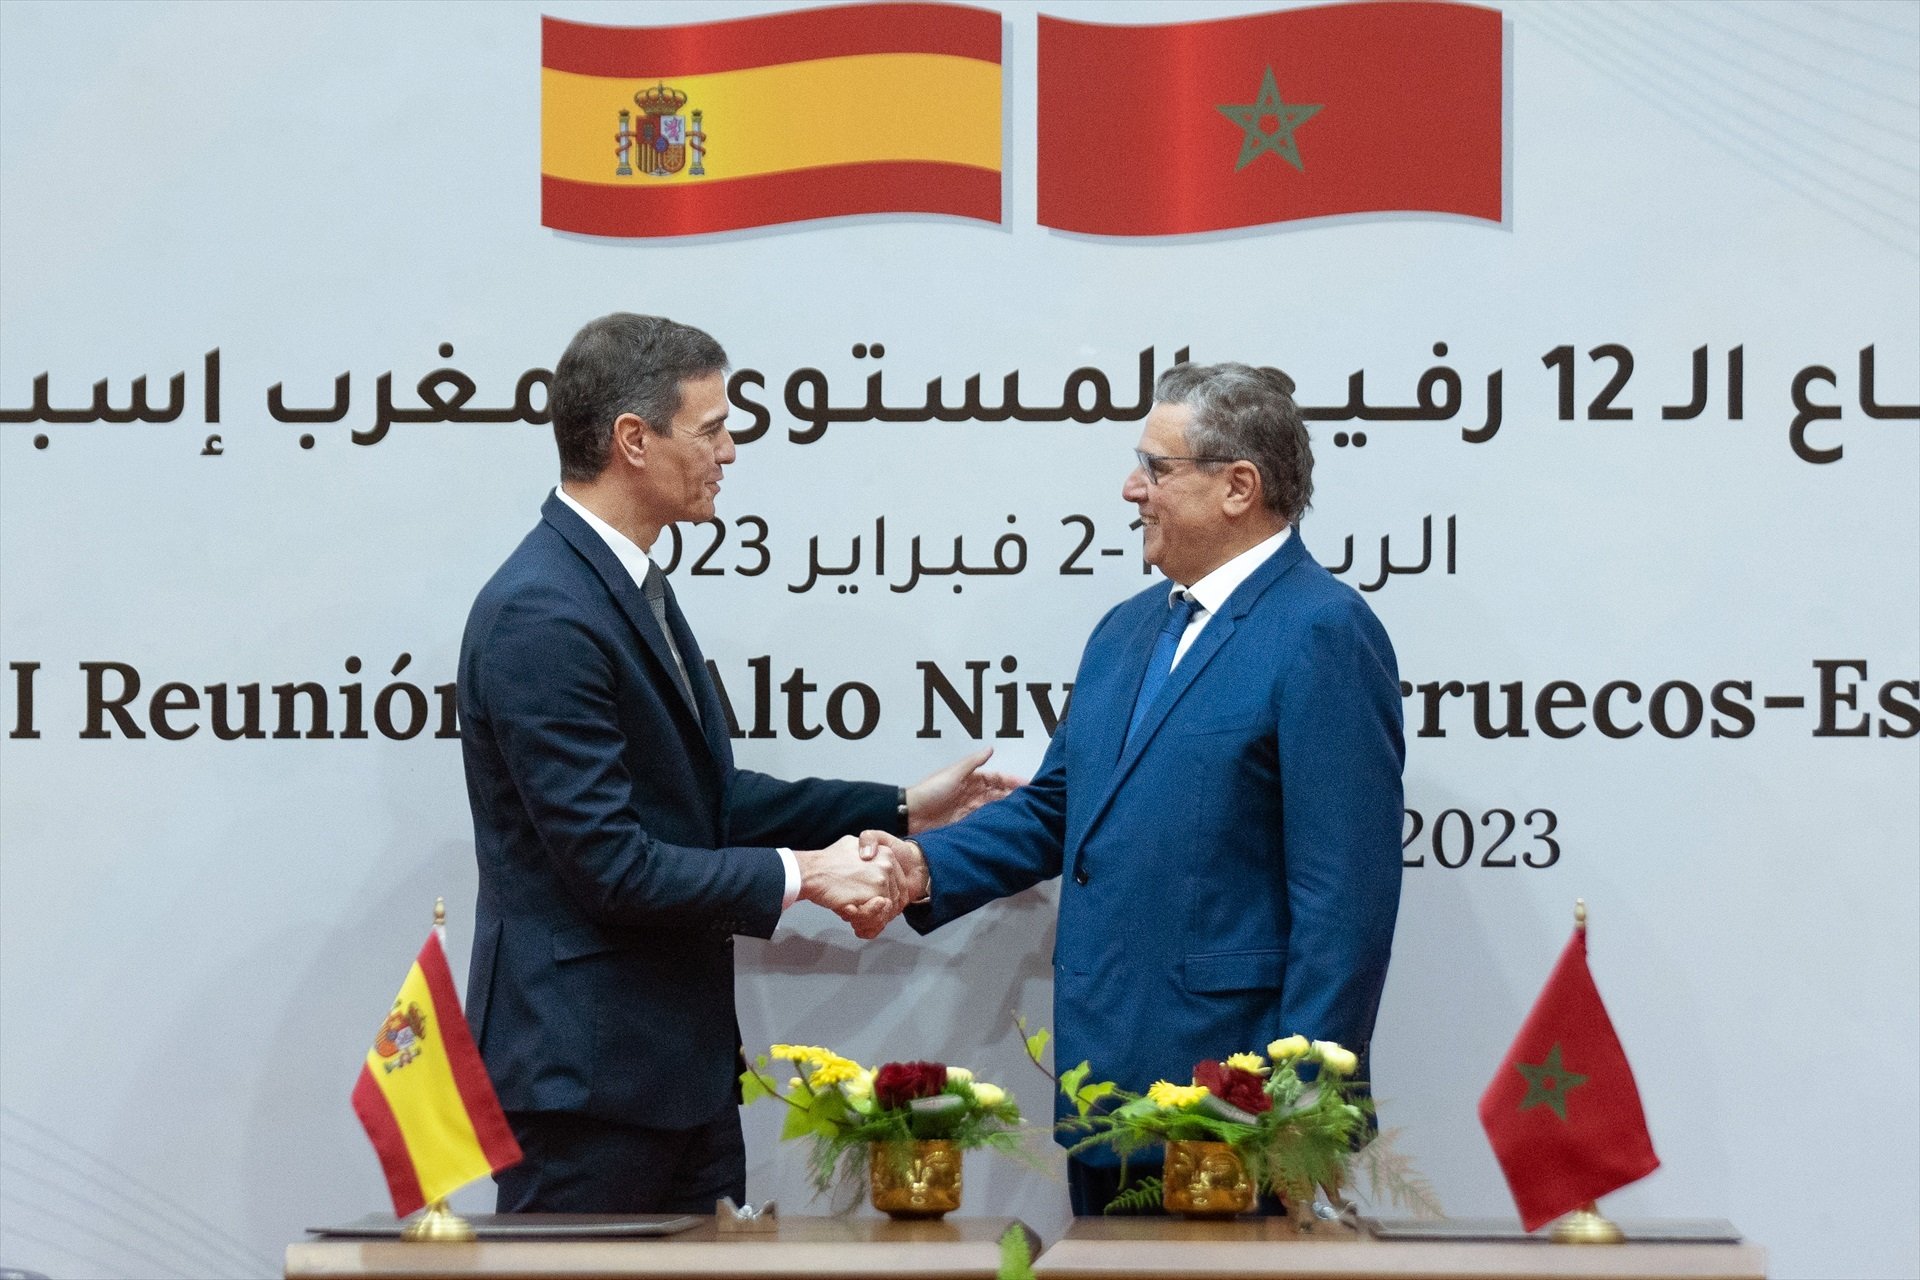 Críticas de Alemania al viaje de Pedro Sánchez a Marruecos: "Ha introducido una cuña en la UE"